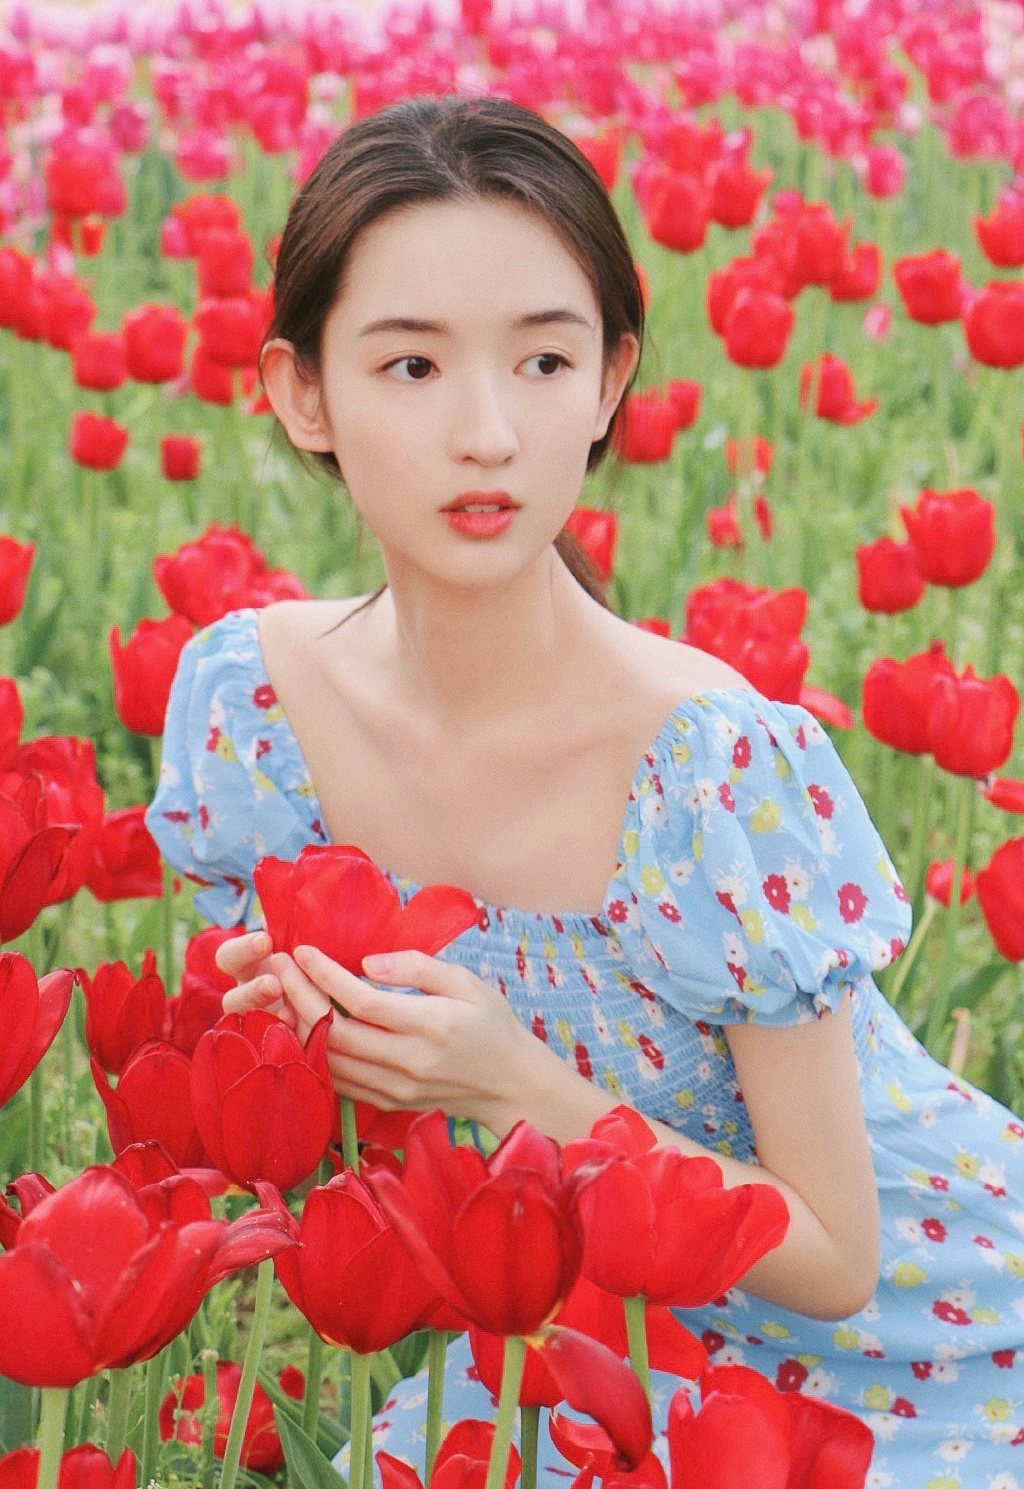 王玉雯清新小碎花裙户外郁金香花园唯美迷人写真图片